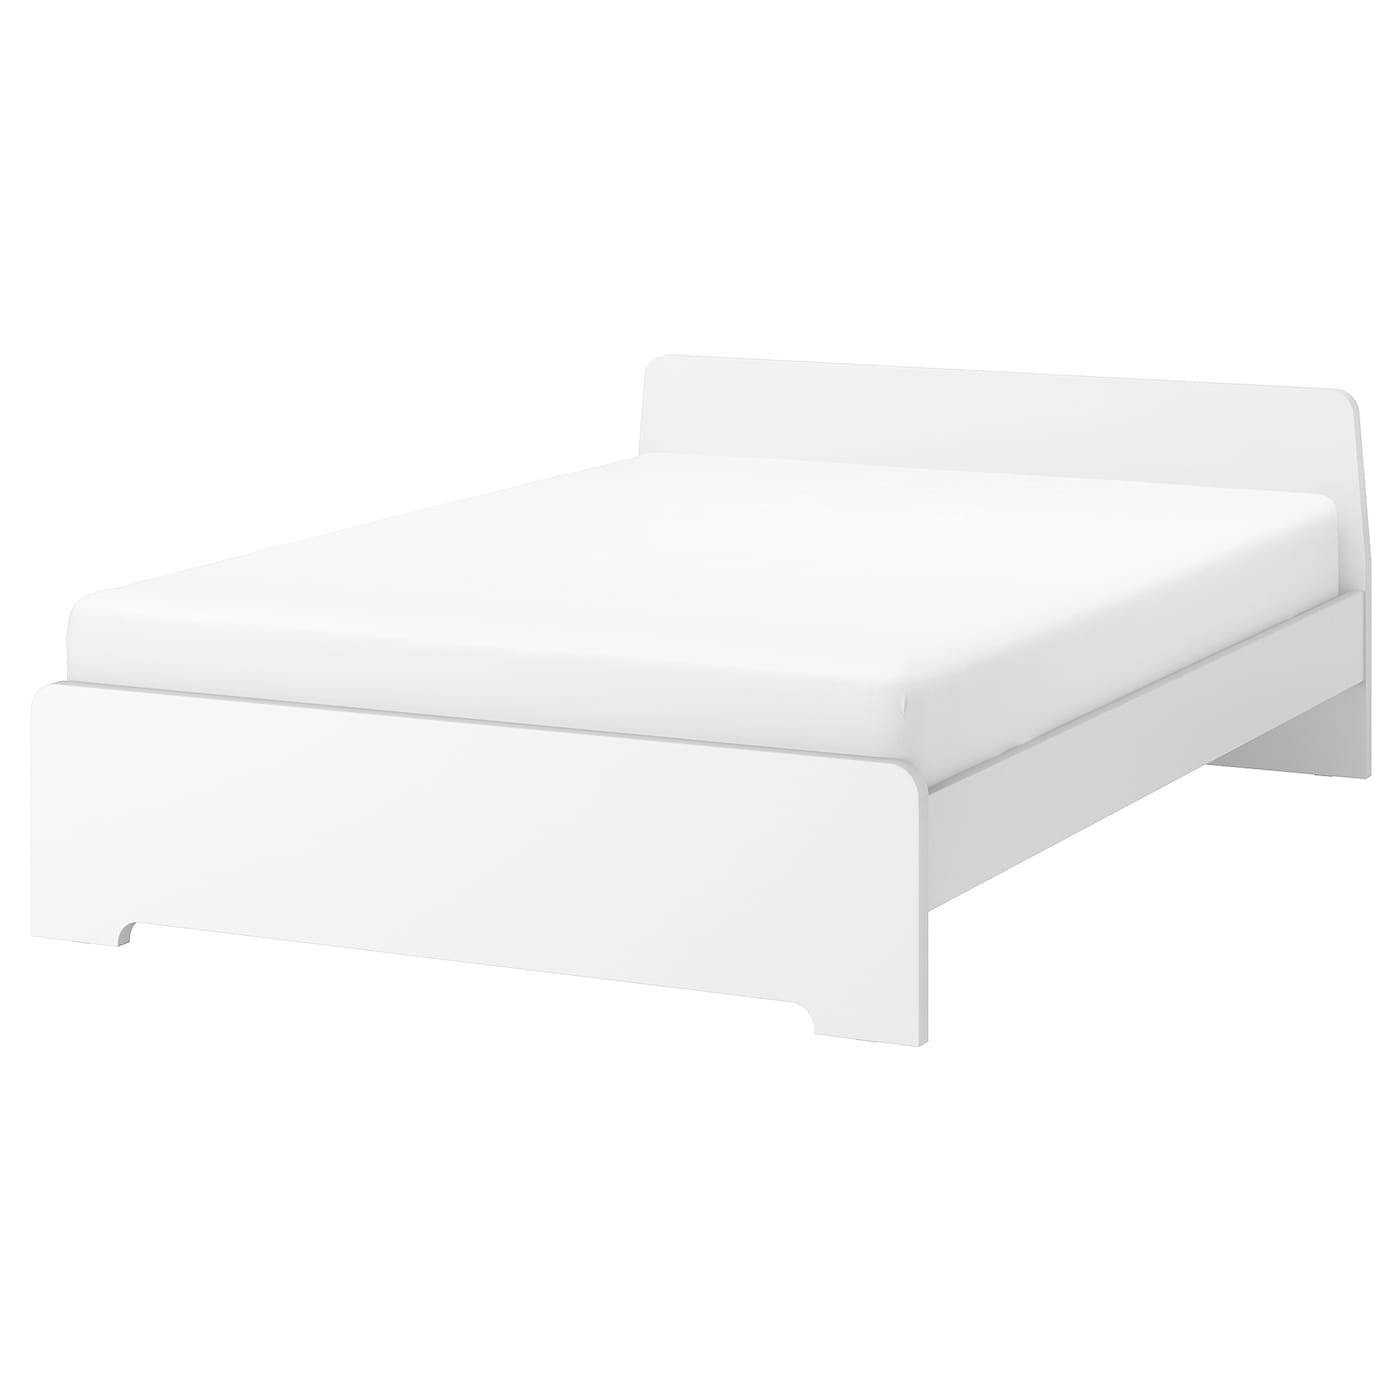 Двуспальная кровать - IKEA ASKVOLL/LINDBADEN, 200х160 см, белый, АСКВОЛЬ/ЛИНДАБДЕН ИКЕА